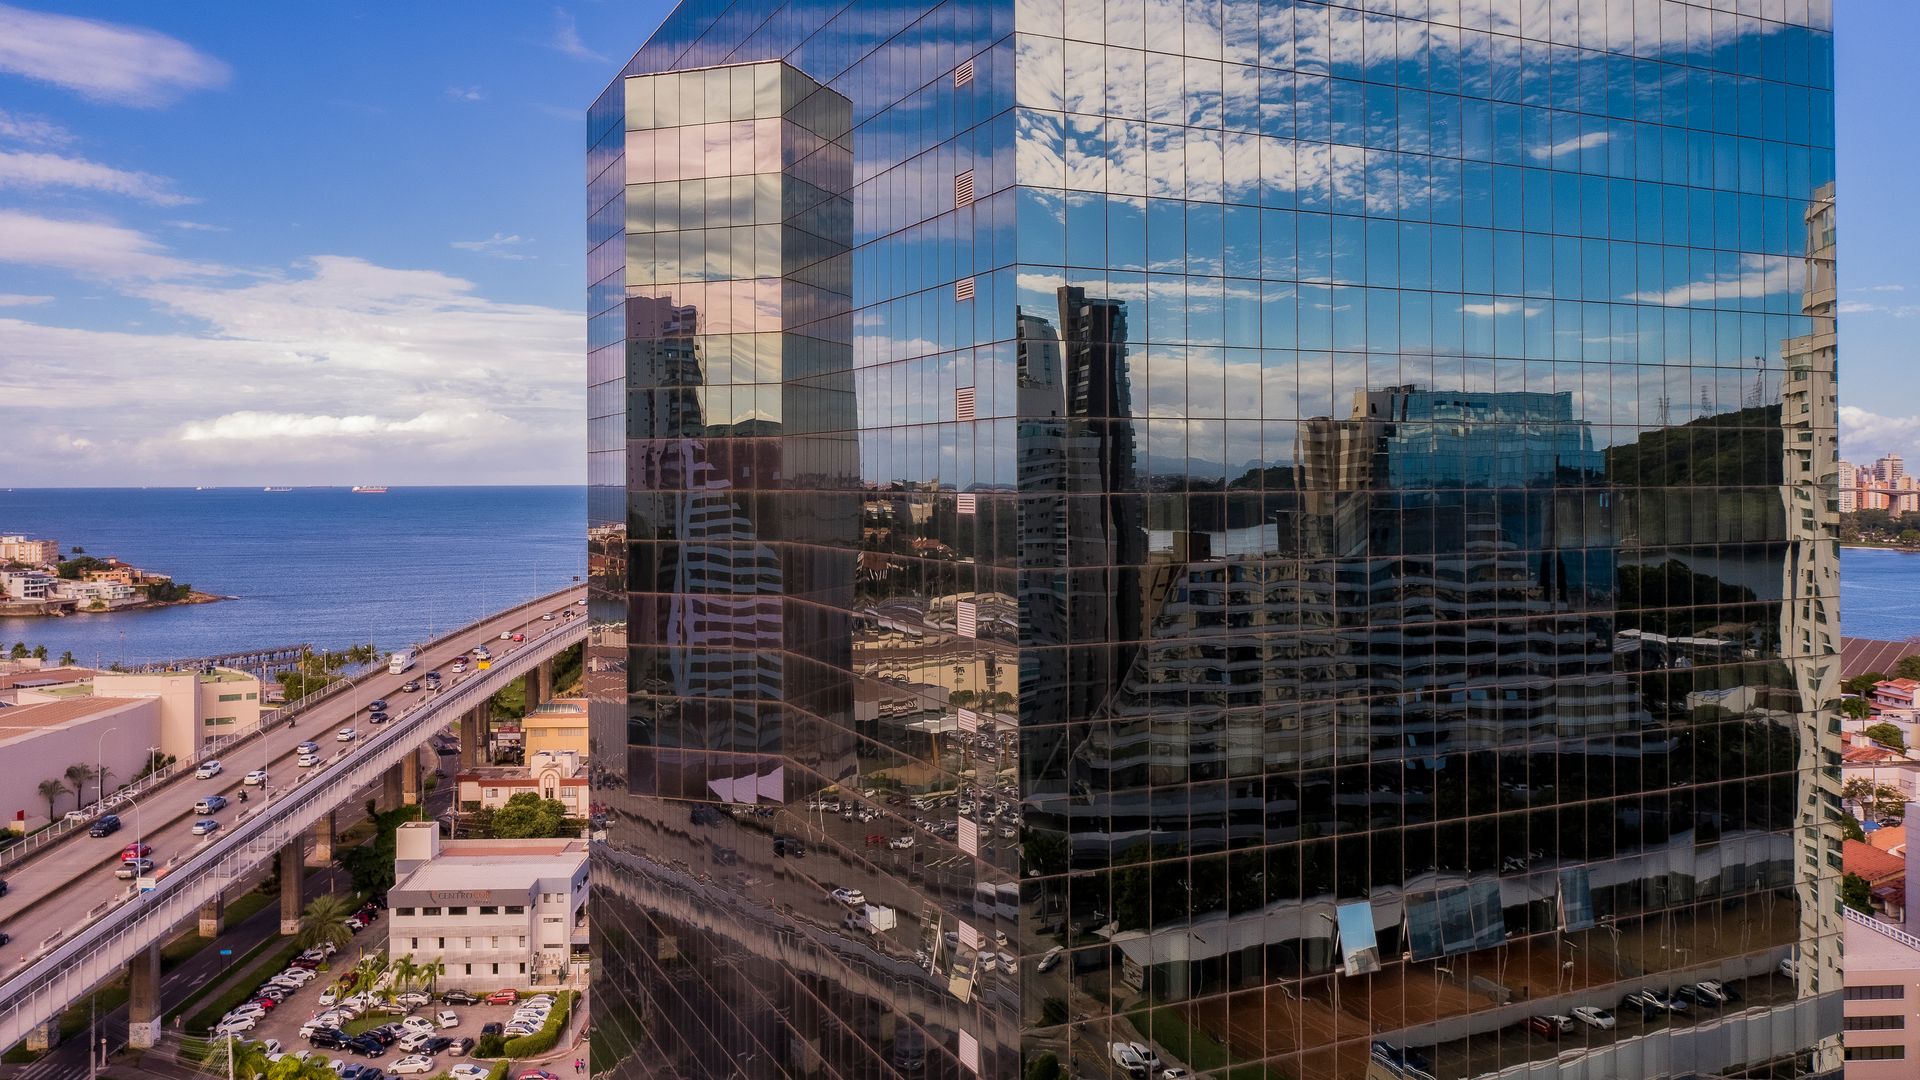 Cidade reflexo. Ensaio fotográfico retrata paisagem urbana de Vitória refletida na arquitetura espelhada